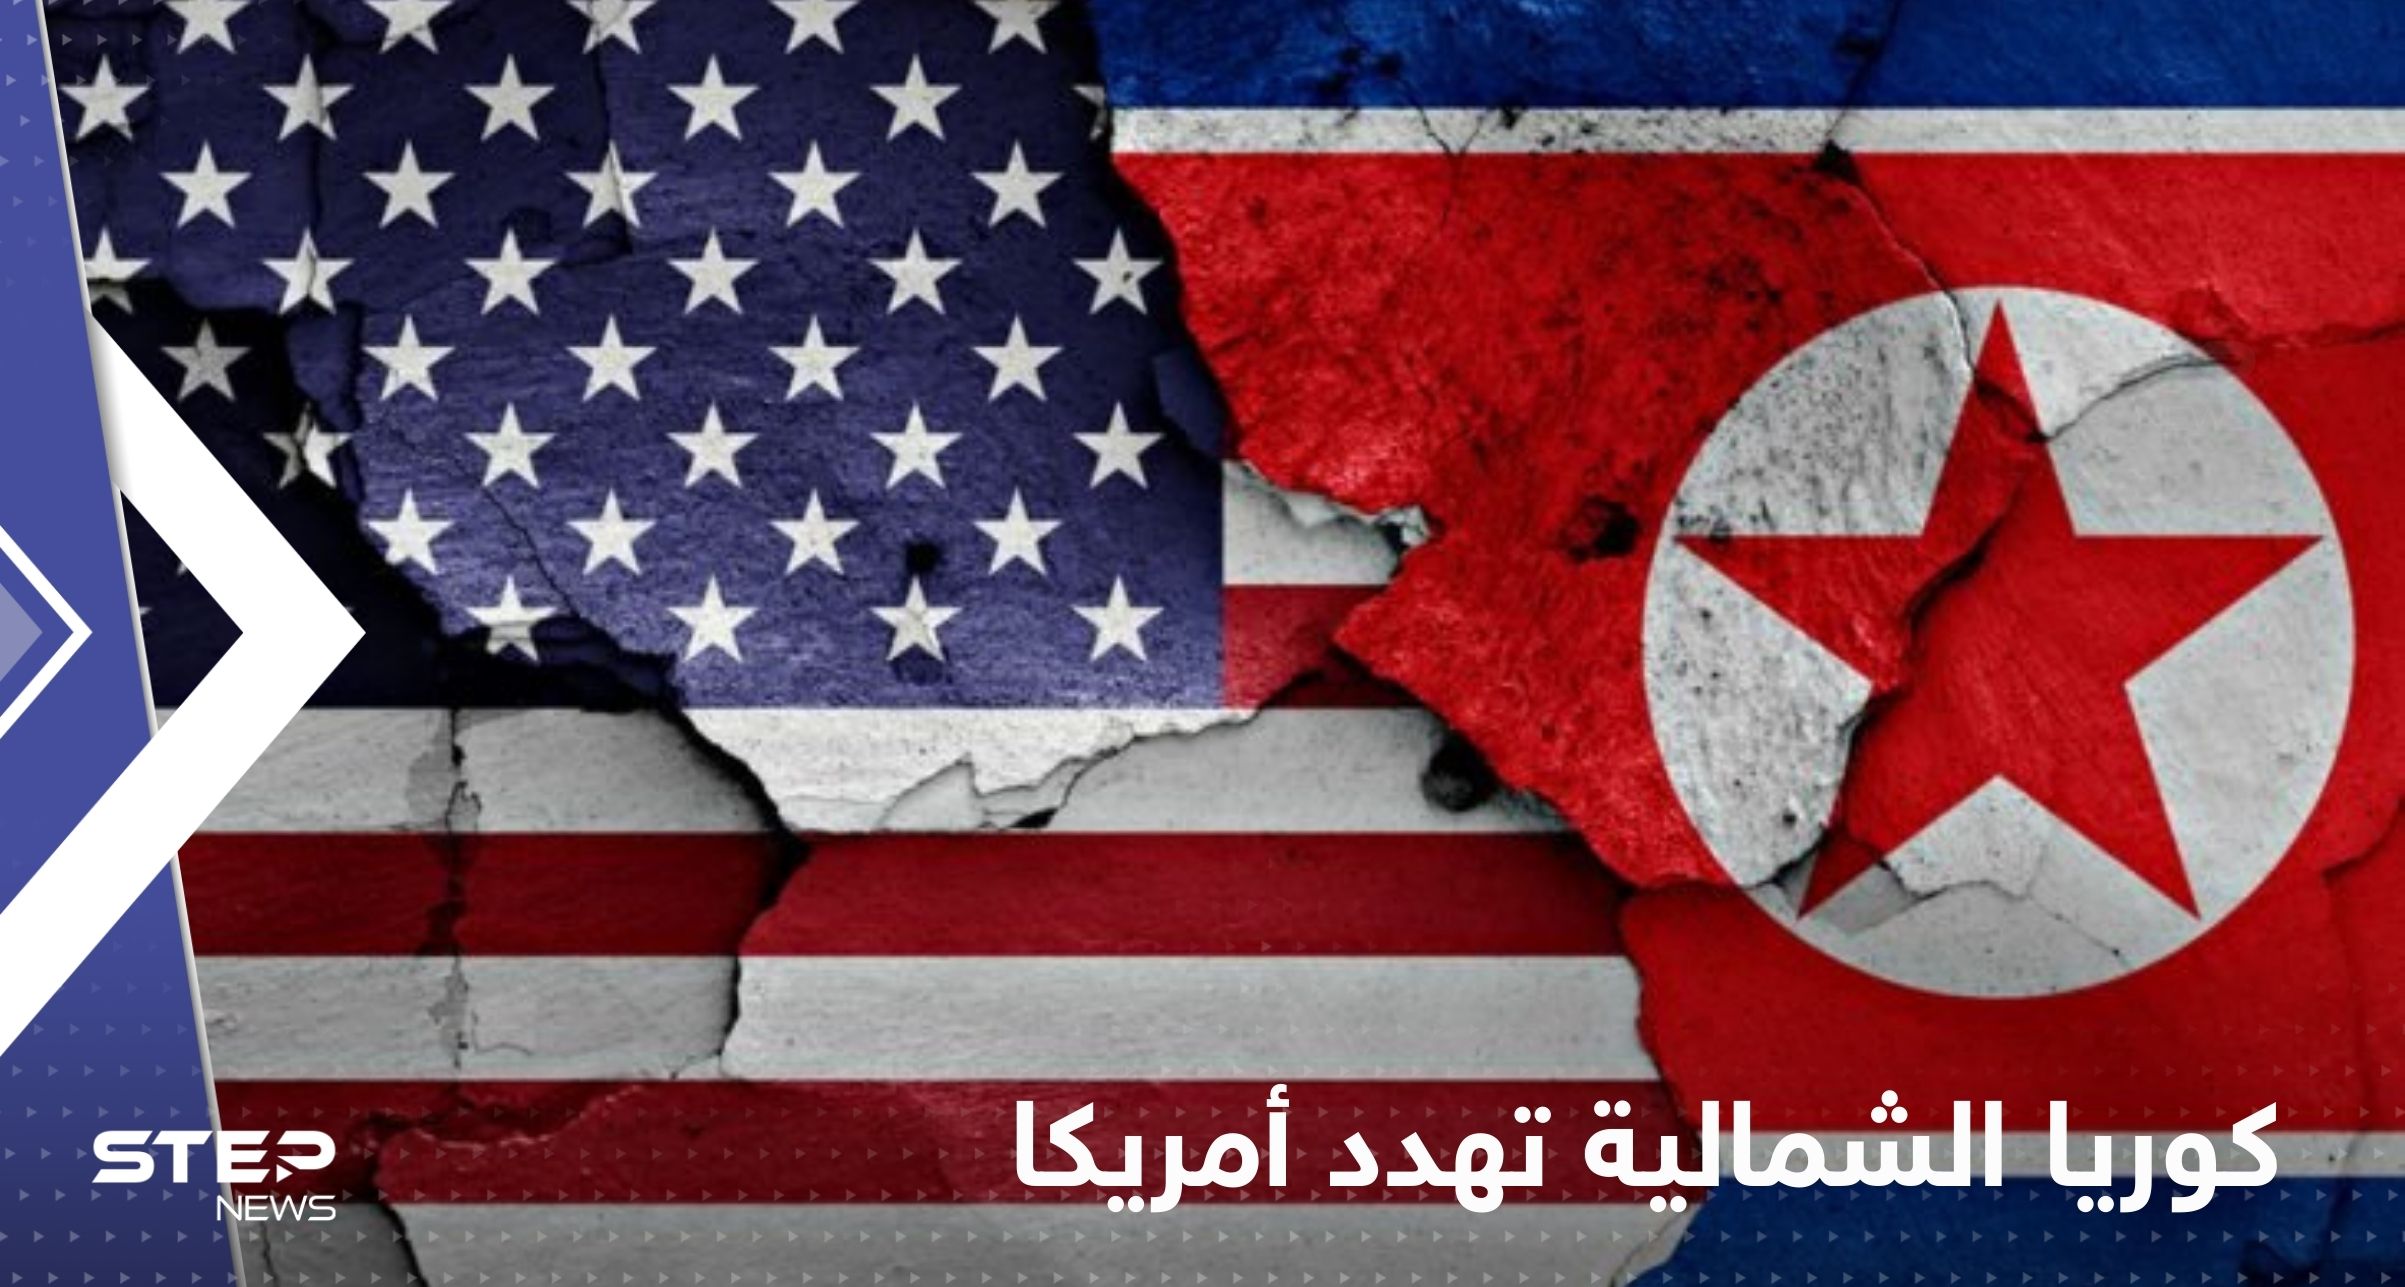 كوريا الشمالية تهدد أمريكا بالقوة النووية وتتهمها بدفع المنطقة "للخطوط الحمراء"